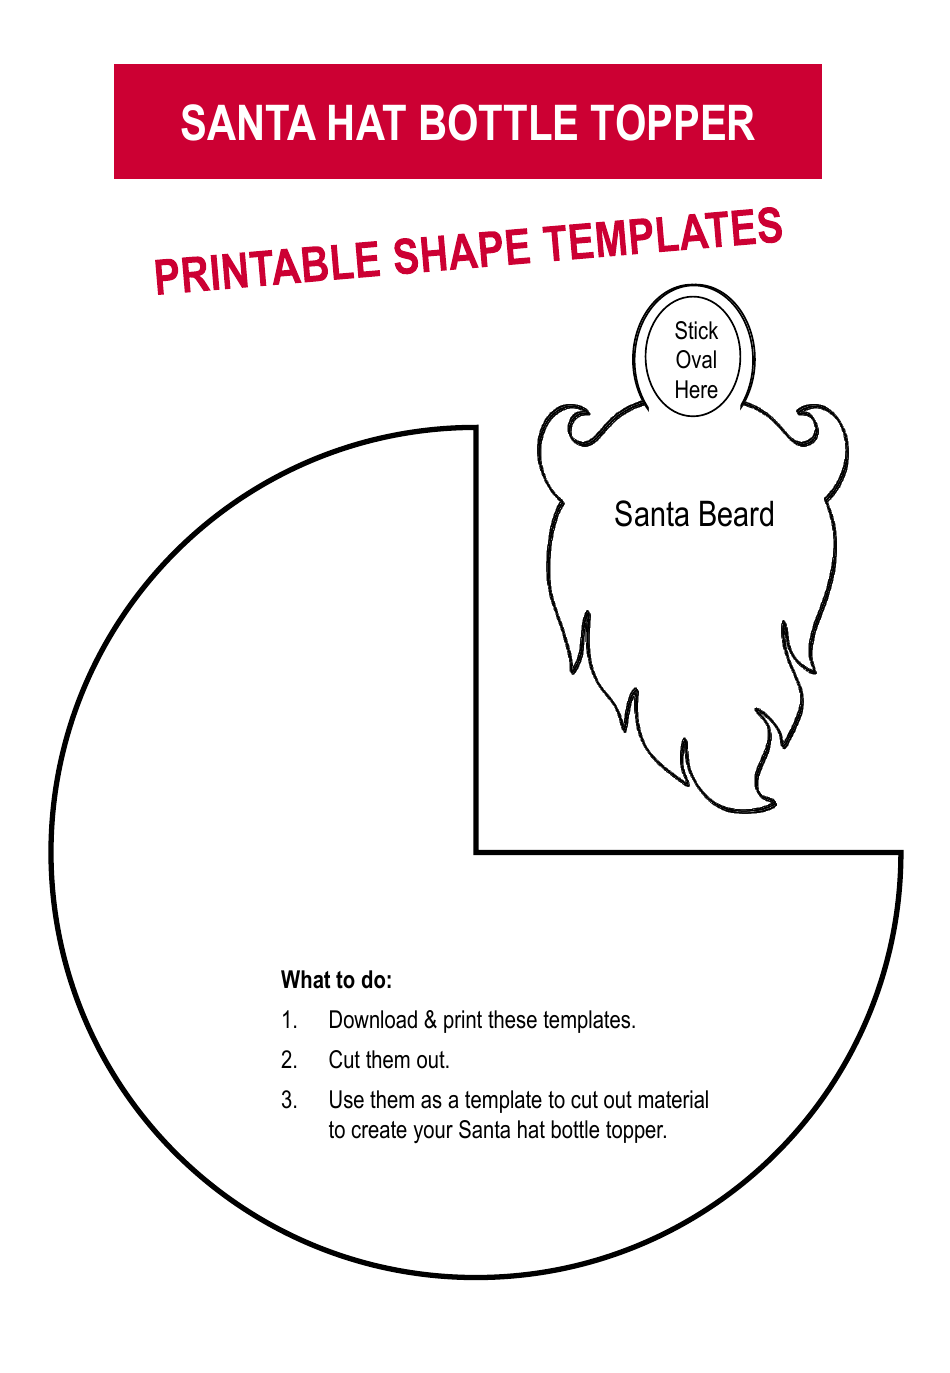 Santa Hat Bottle Topper Template - Free Printable PDF